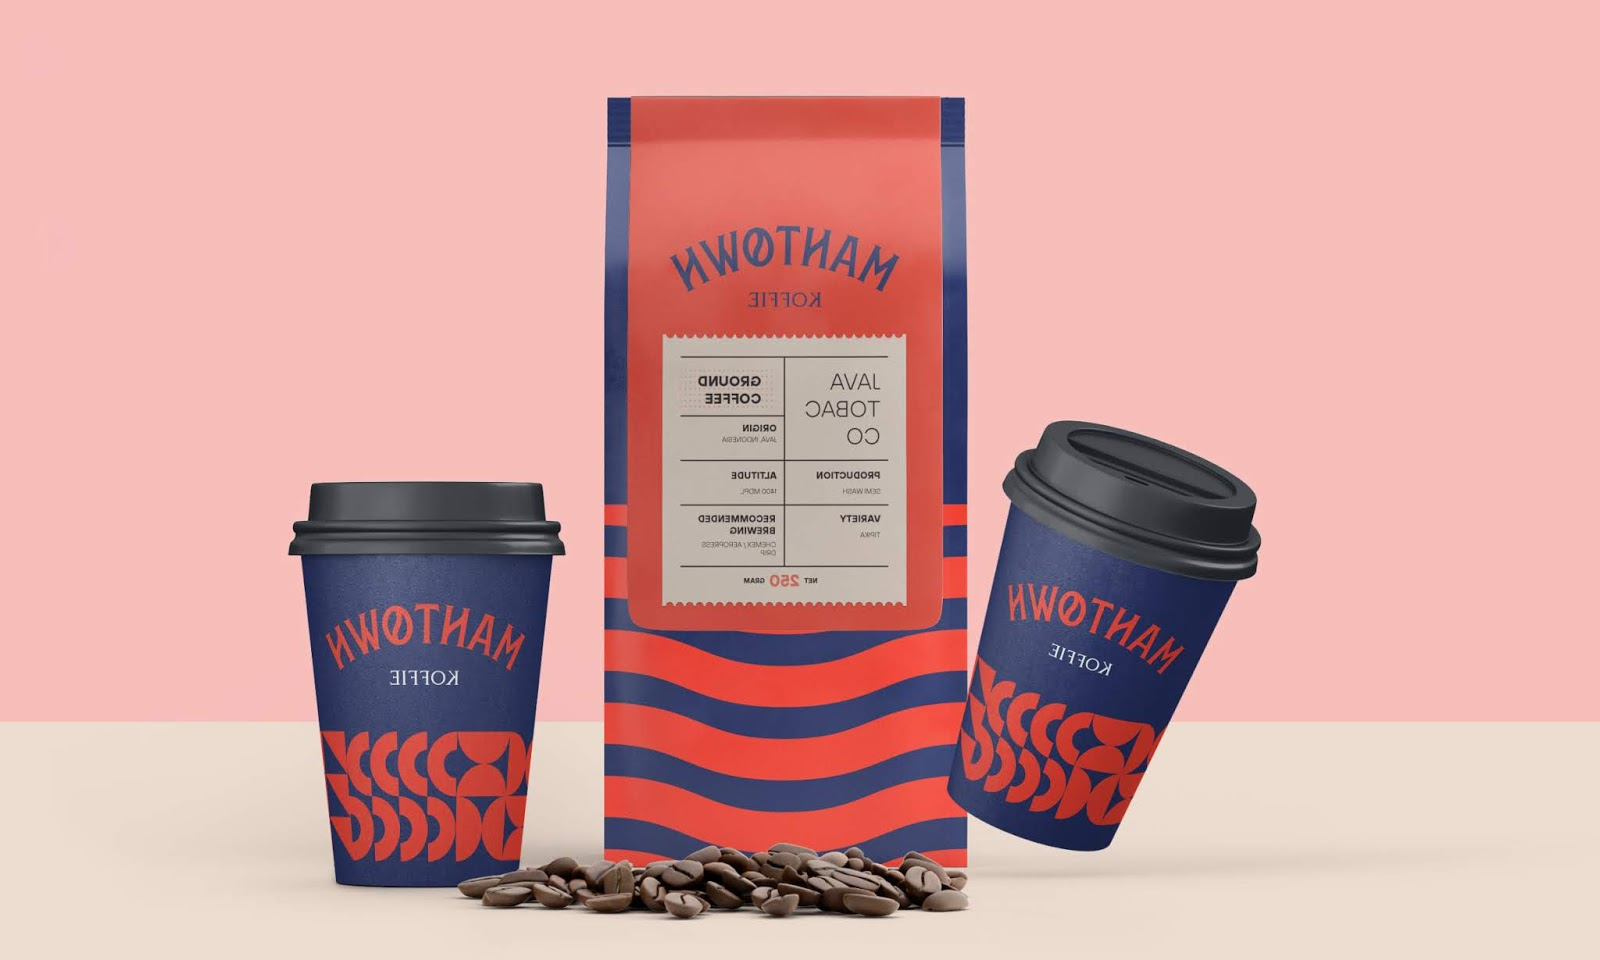 位于荷兰的工匠咖啡店品牌包装设计(图8)